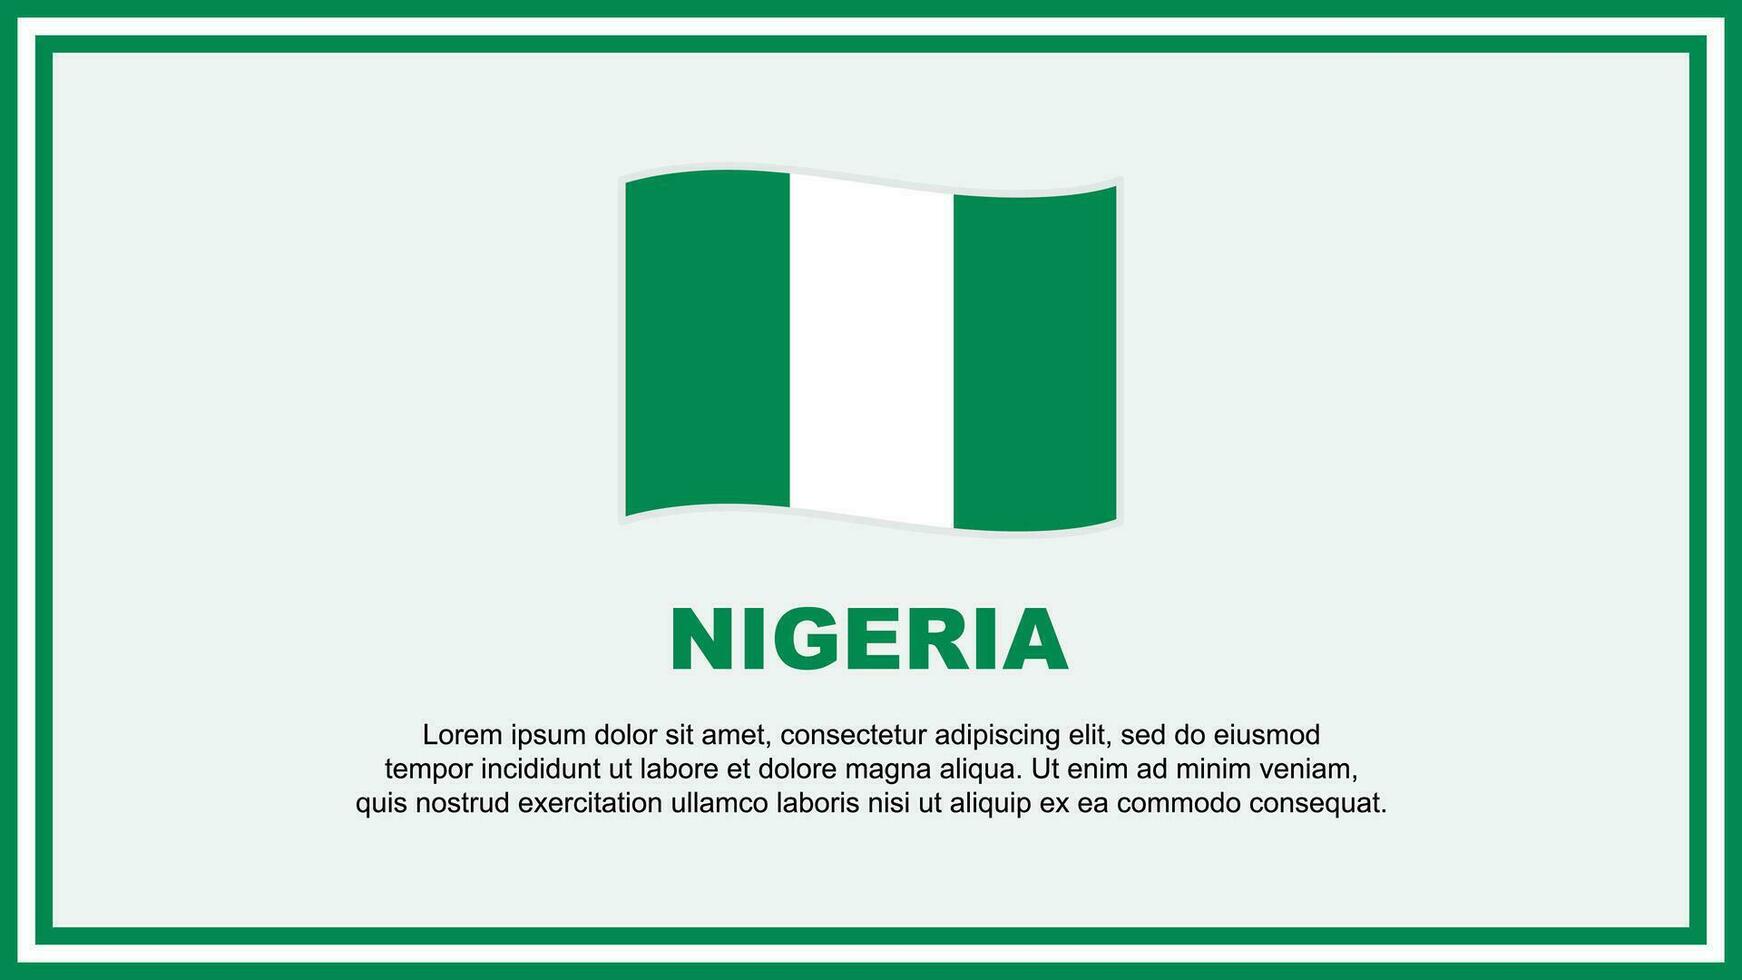 Nigeria vlag abstract achtergrond ontwerp sjabloon. Nigeria onafhankelijkheid dag banier sociaal media vector illustratie. Nigeria banier